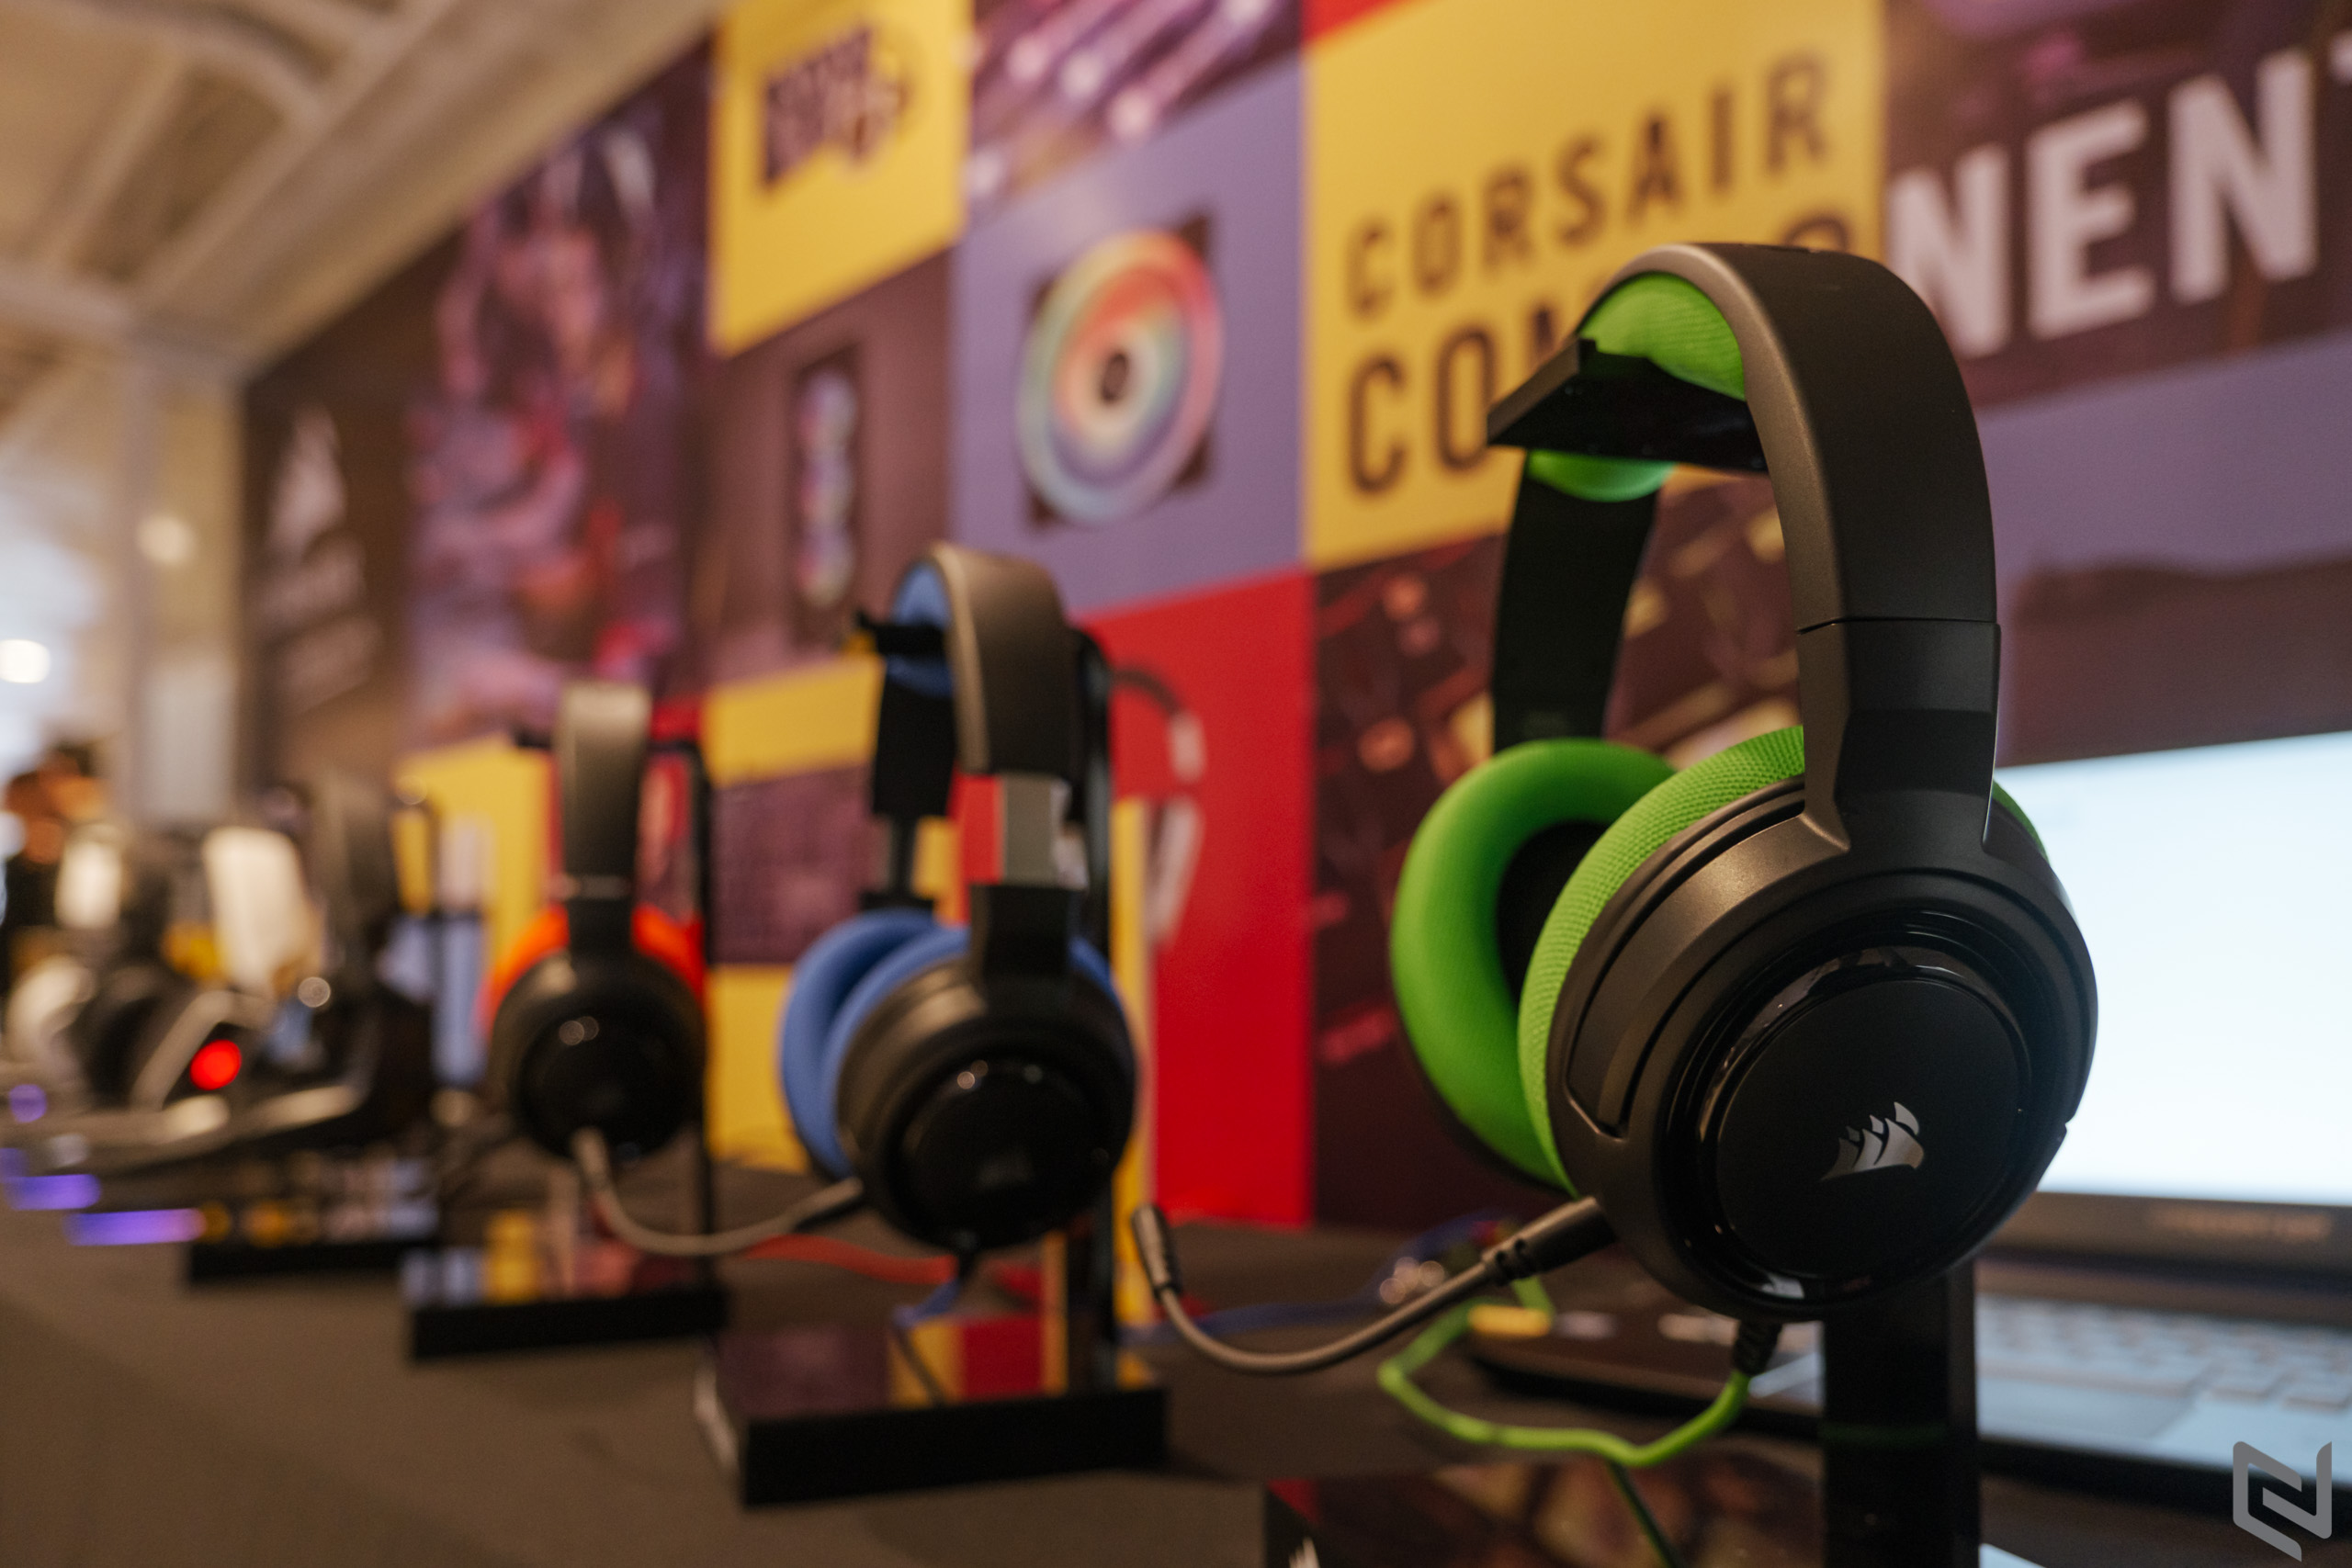 Corsair ra mắt tai nghe Virtuoso RGB Wireless cao cấp và làm mới các loạt sản phẩm trước đó